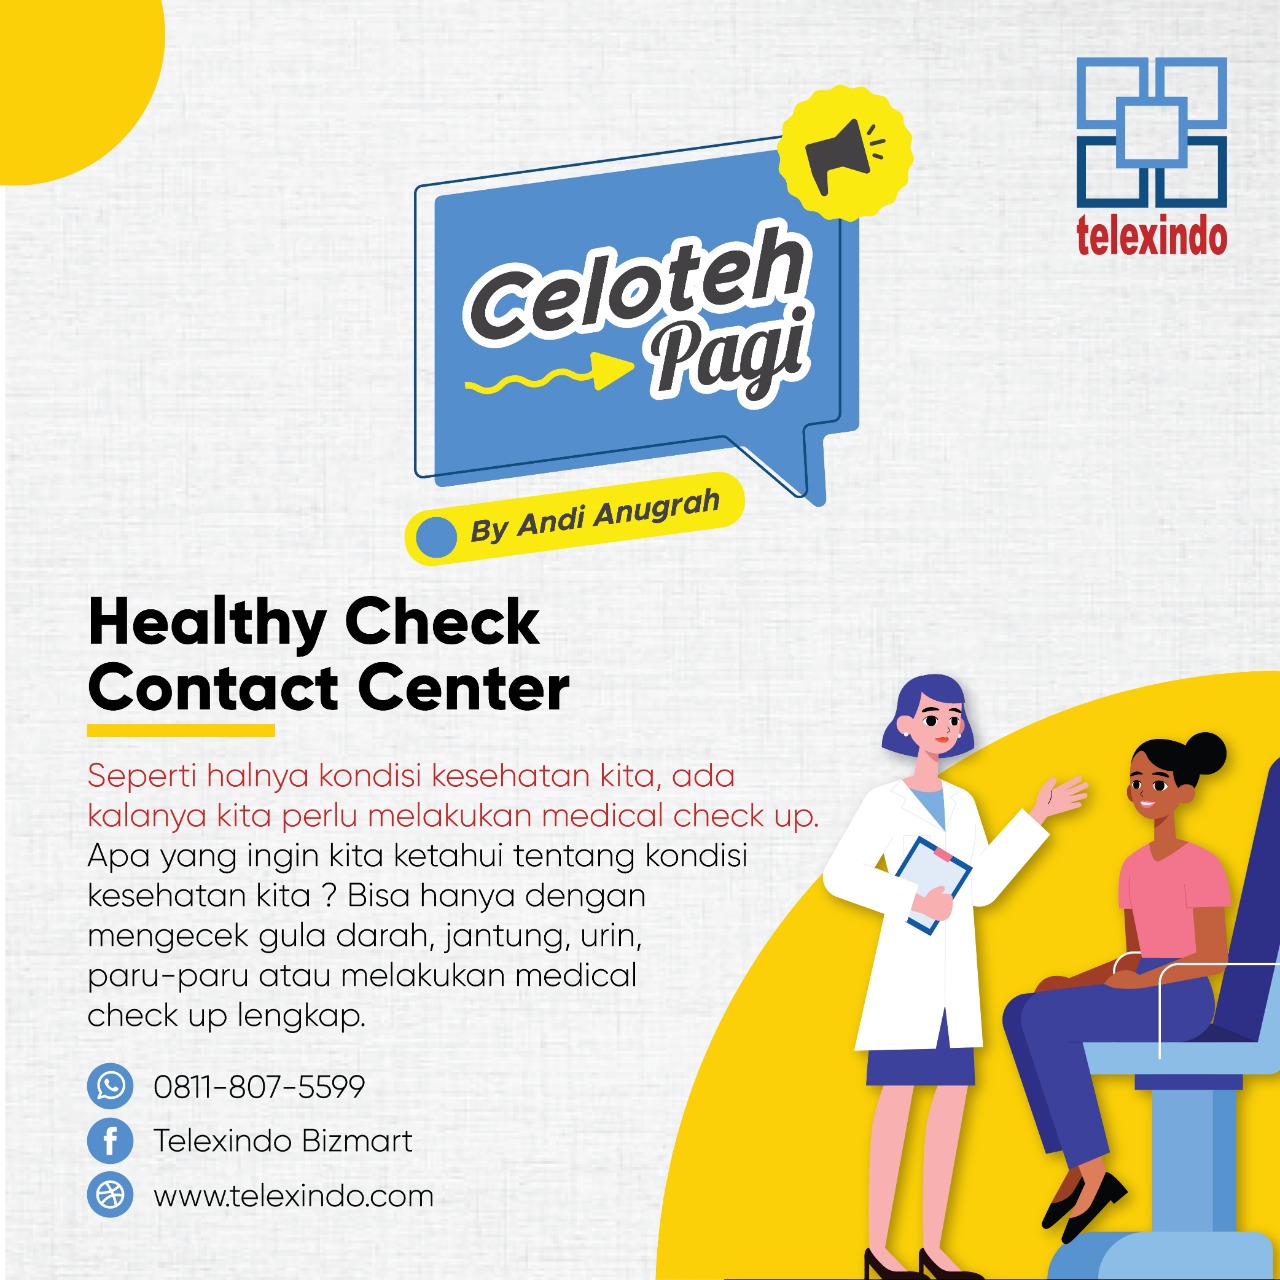 Celoteh Pagi : Healthy Check Contact Center